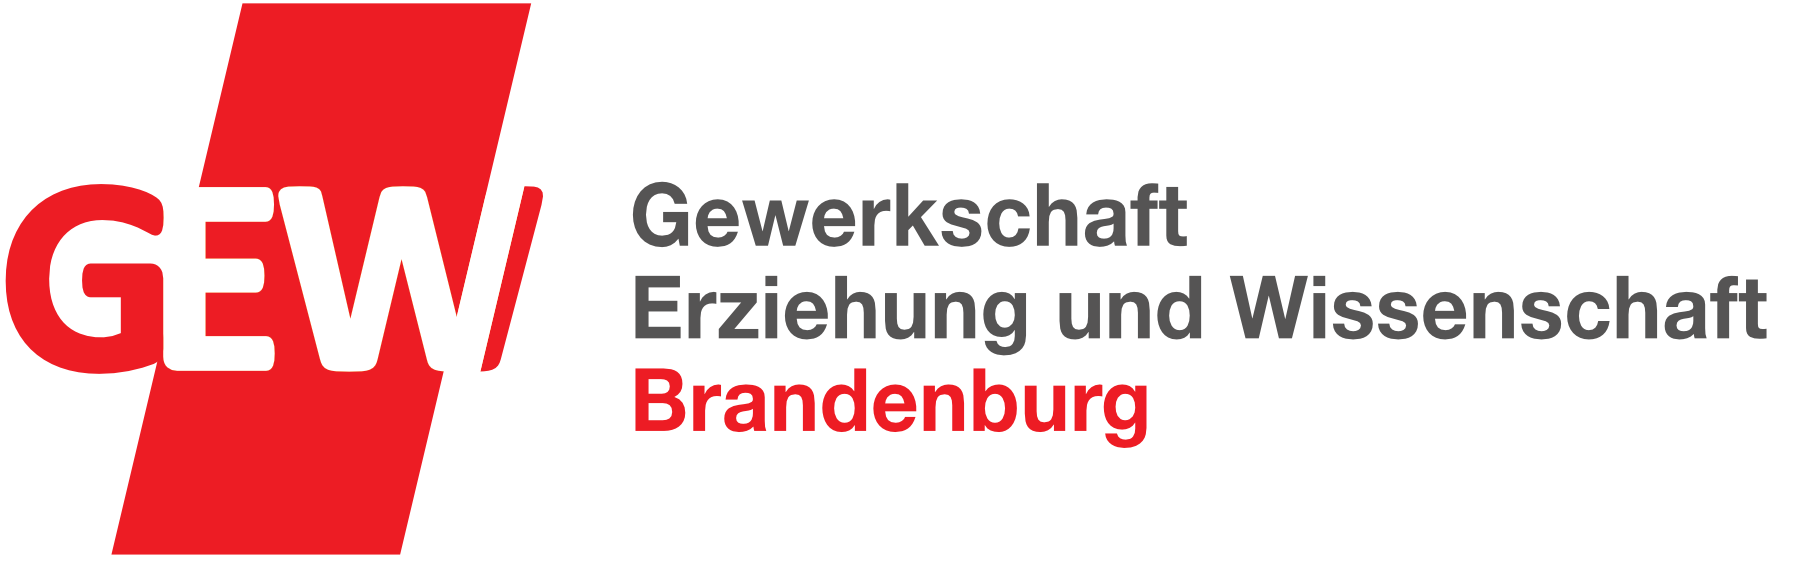 GEW Brandenburg